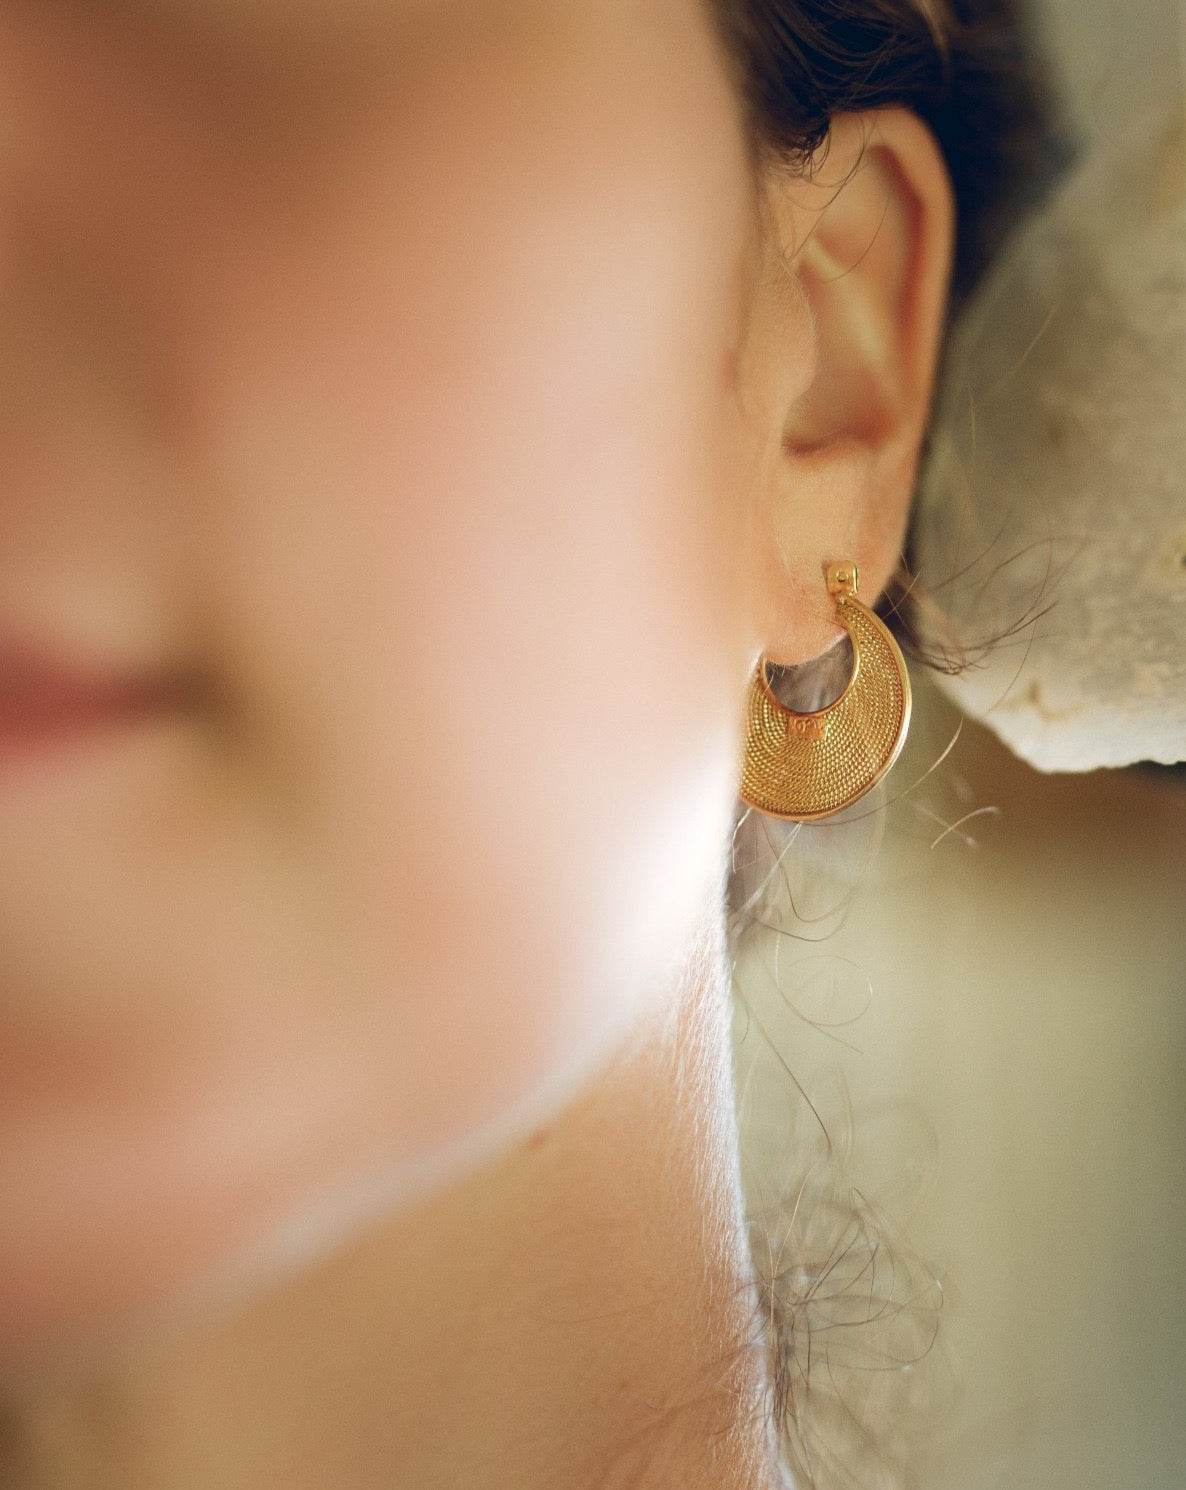 Ohrringe gold modern | Handgemacht auf Bali | goldene ohrringe stecker | Handgemachte Ohrringe gold creolen  | Bali Schmuck online kaufen | Fair produzierter Schmuck aus Bali |  Das perfekte Geschenk für Freundin finden bei VERLAN Jewellery 